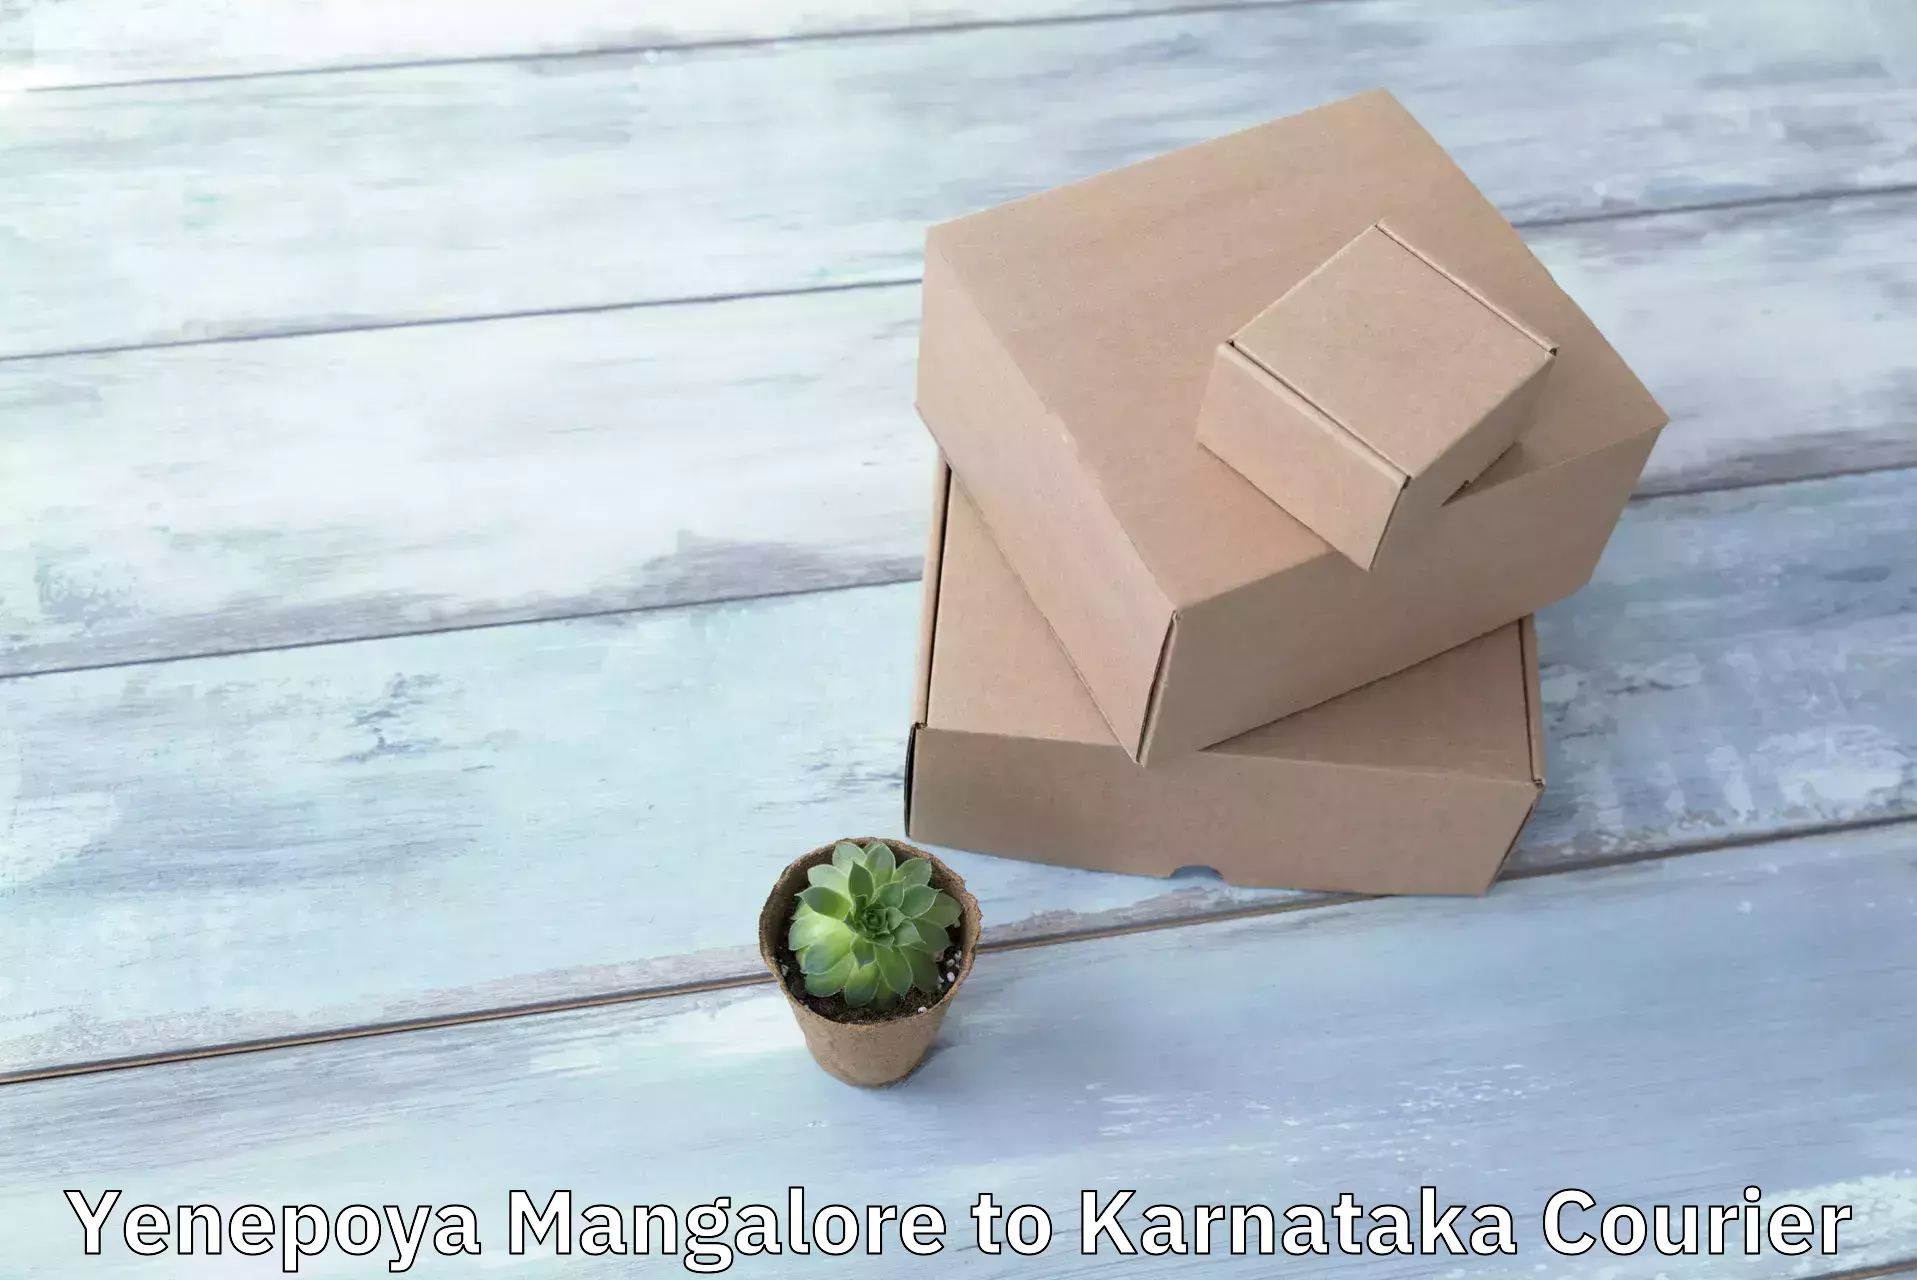 Efficient cargo handling Yenepoya Mangalore to Karnataka